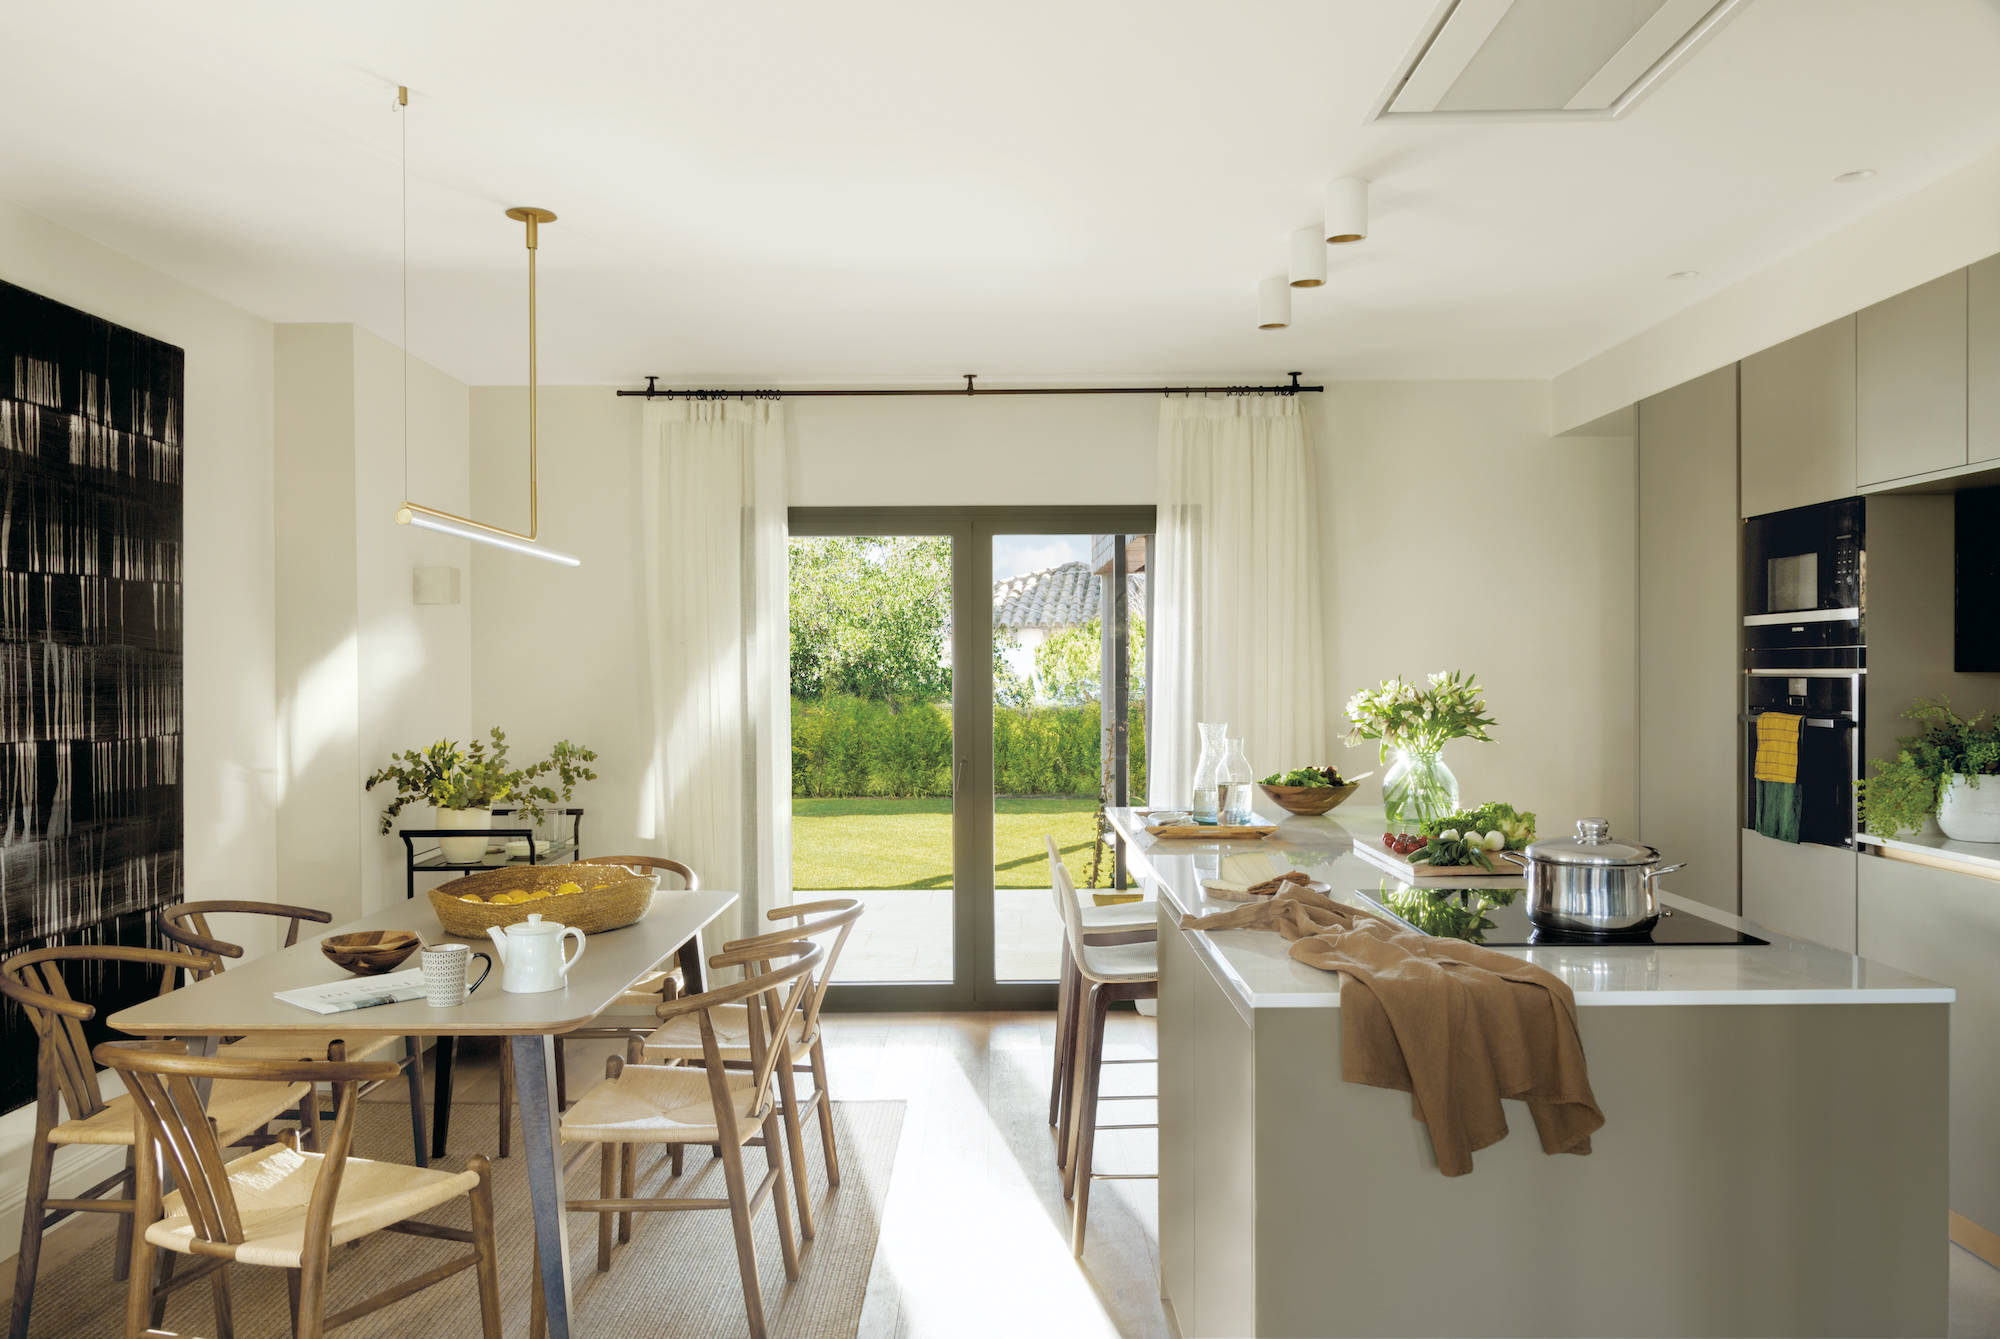 Cocina moderna con isla, paredes blancas y muebles topo. 